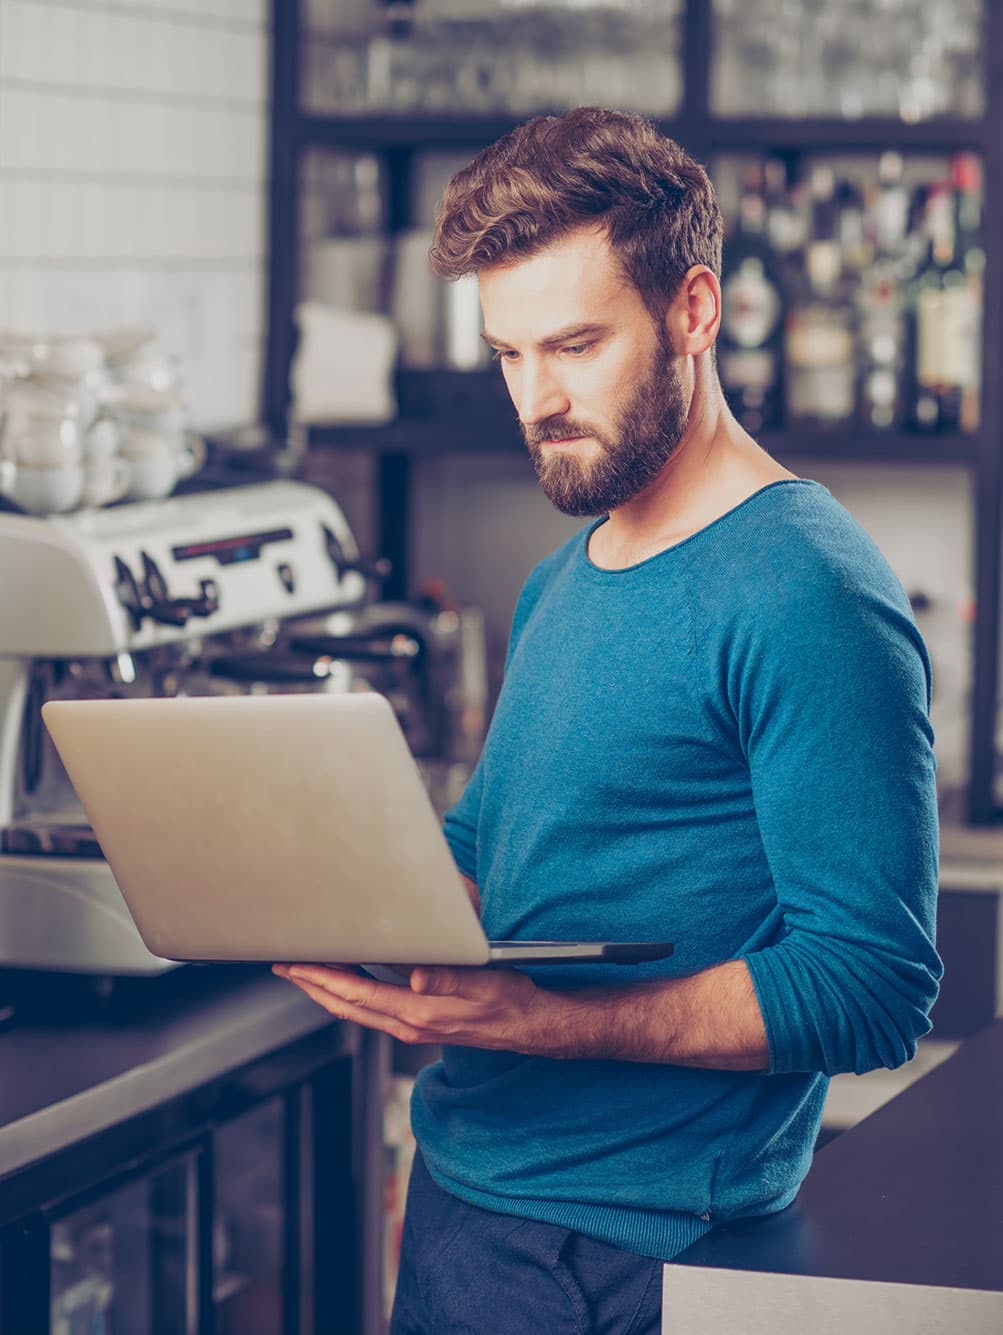 Une barista regarde l’écran d’un ordinateur portable près d’une machine à espresso.